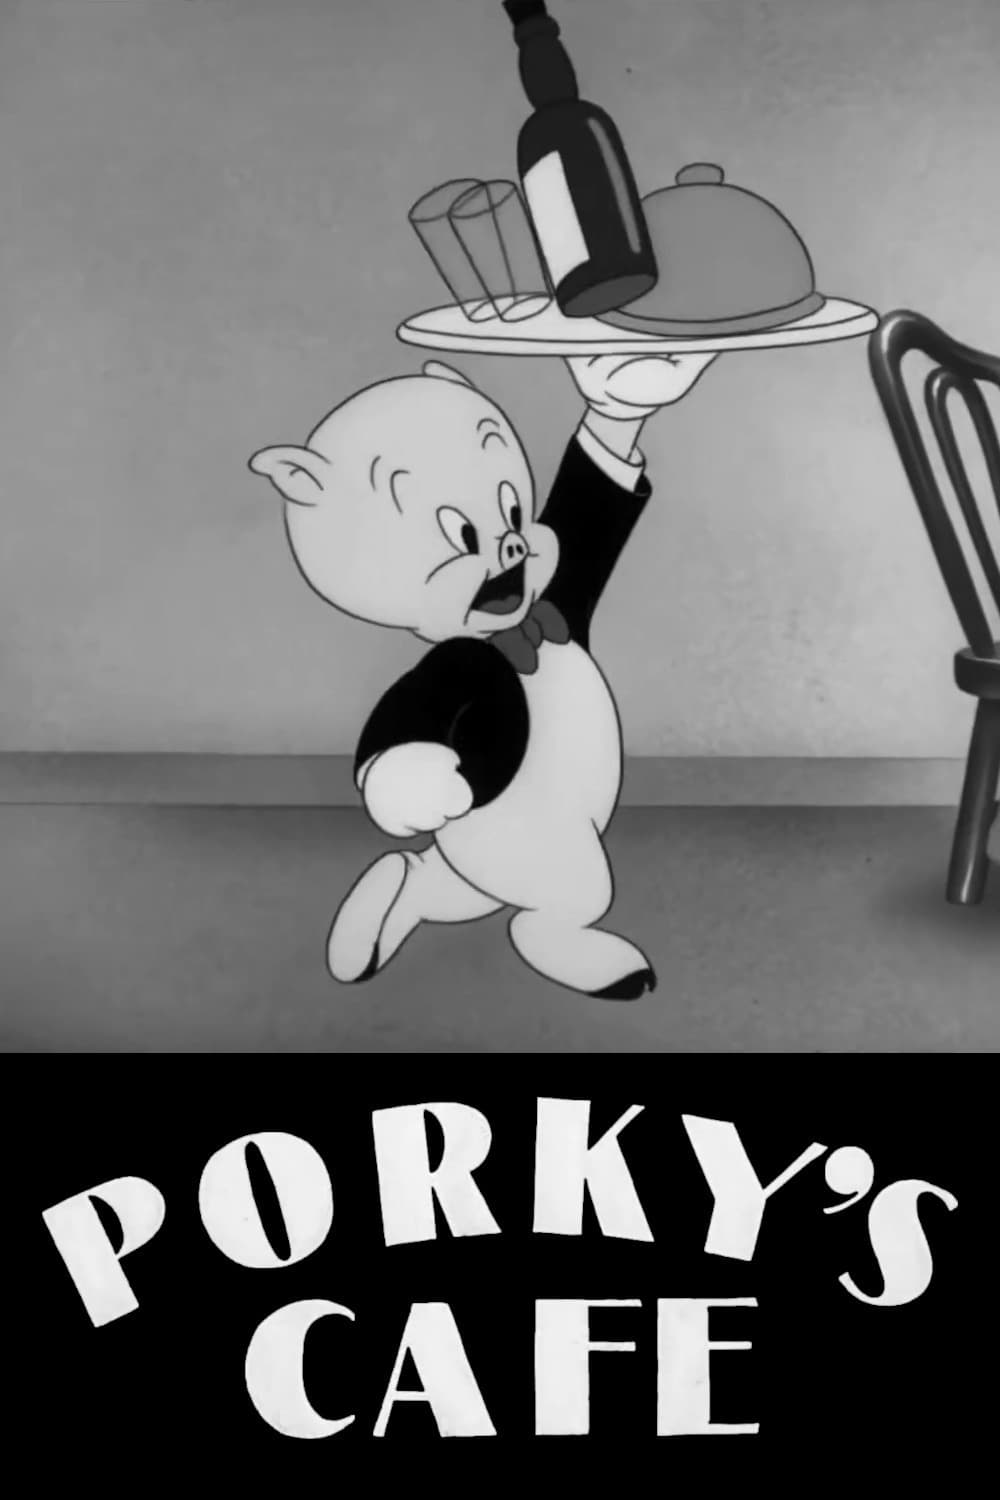 Porky's Cafe (1942)